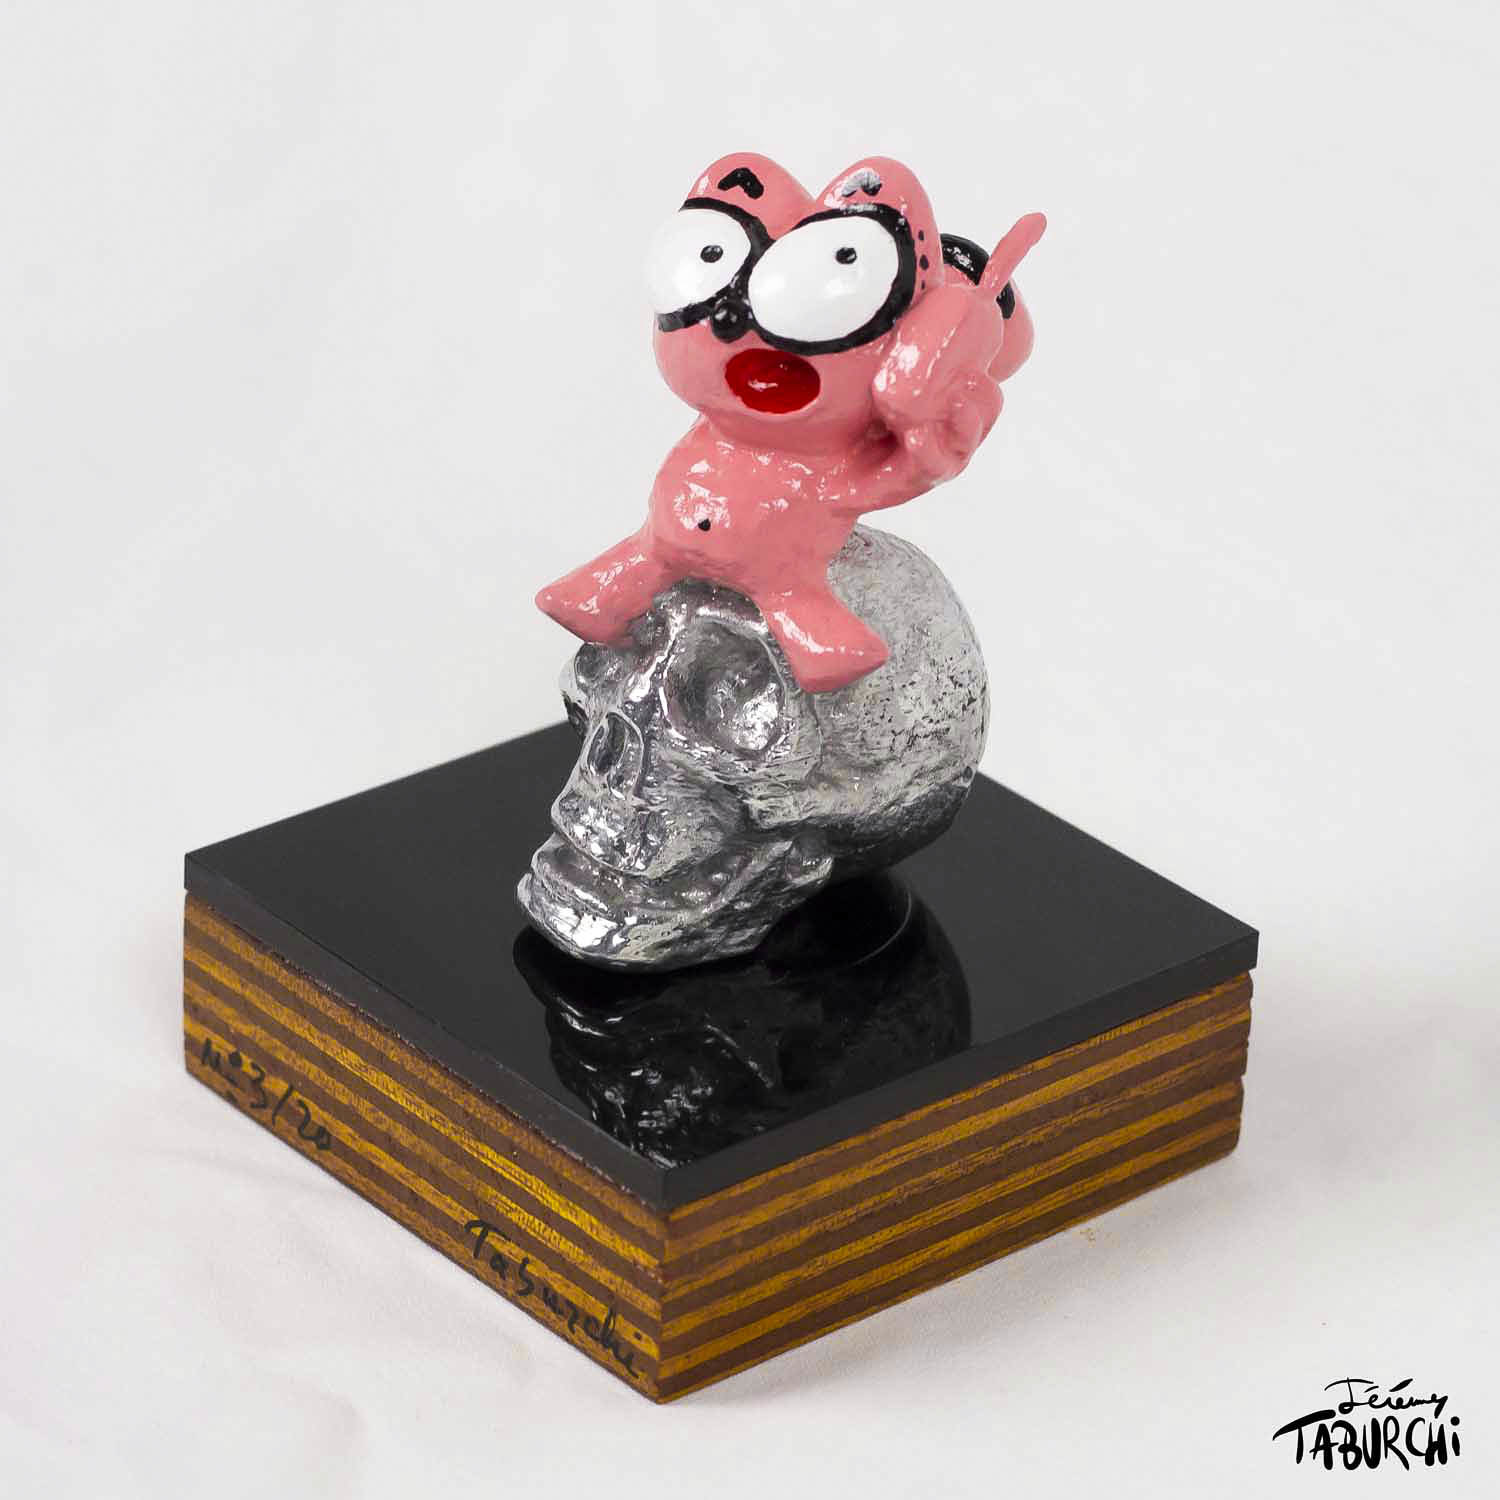 Sculpture of the Pink Cat in aluminum